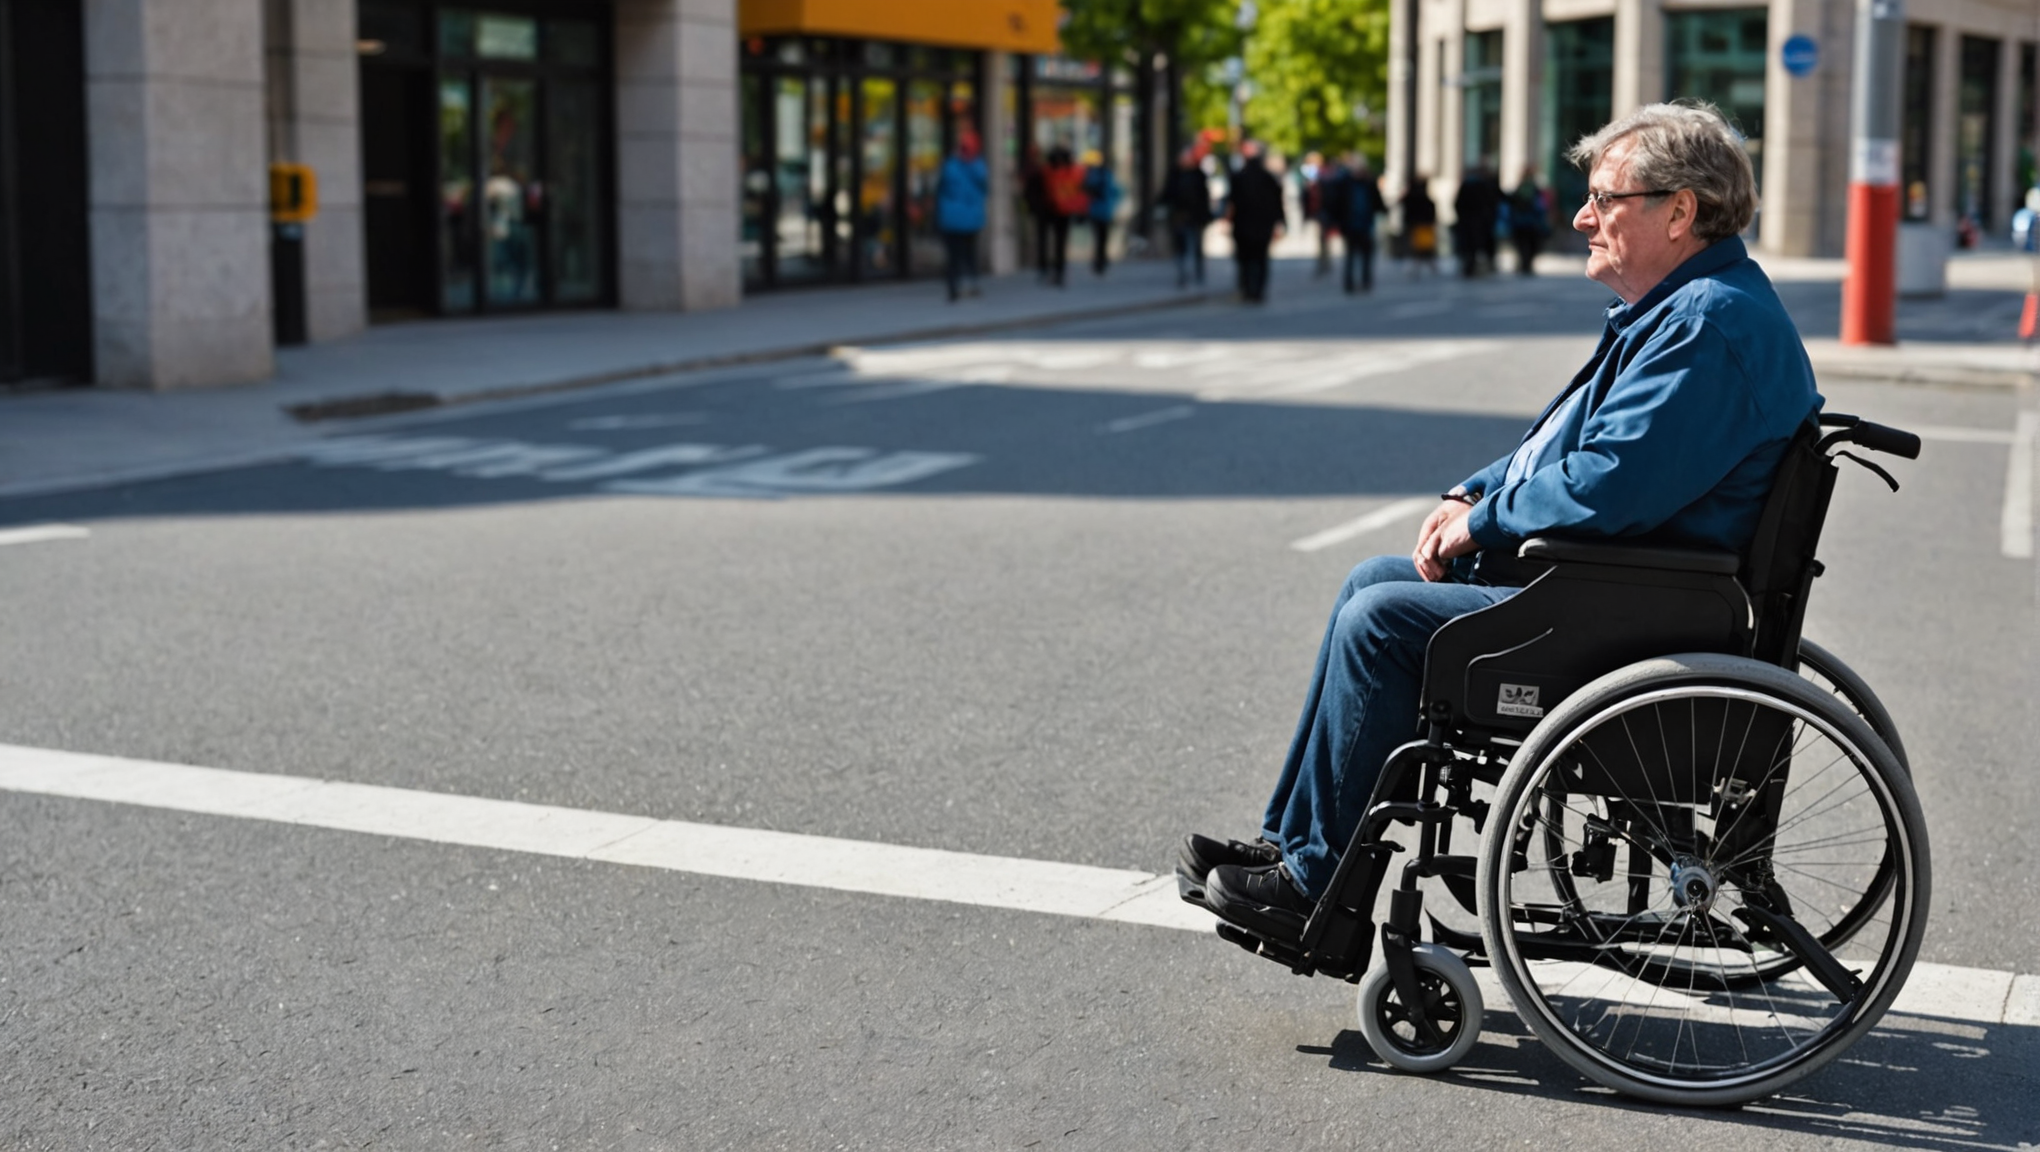 découvrez ce que signifie pmr et son importance dans la société. informations sur la personne à mobilité réduite et les mesures d'accessibilité.